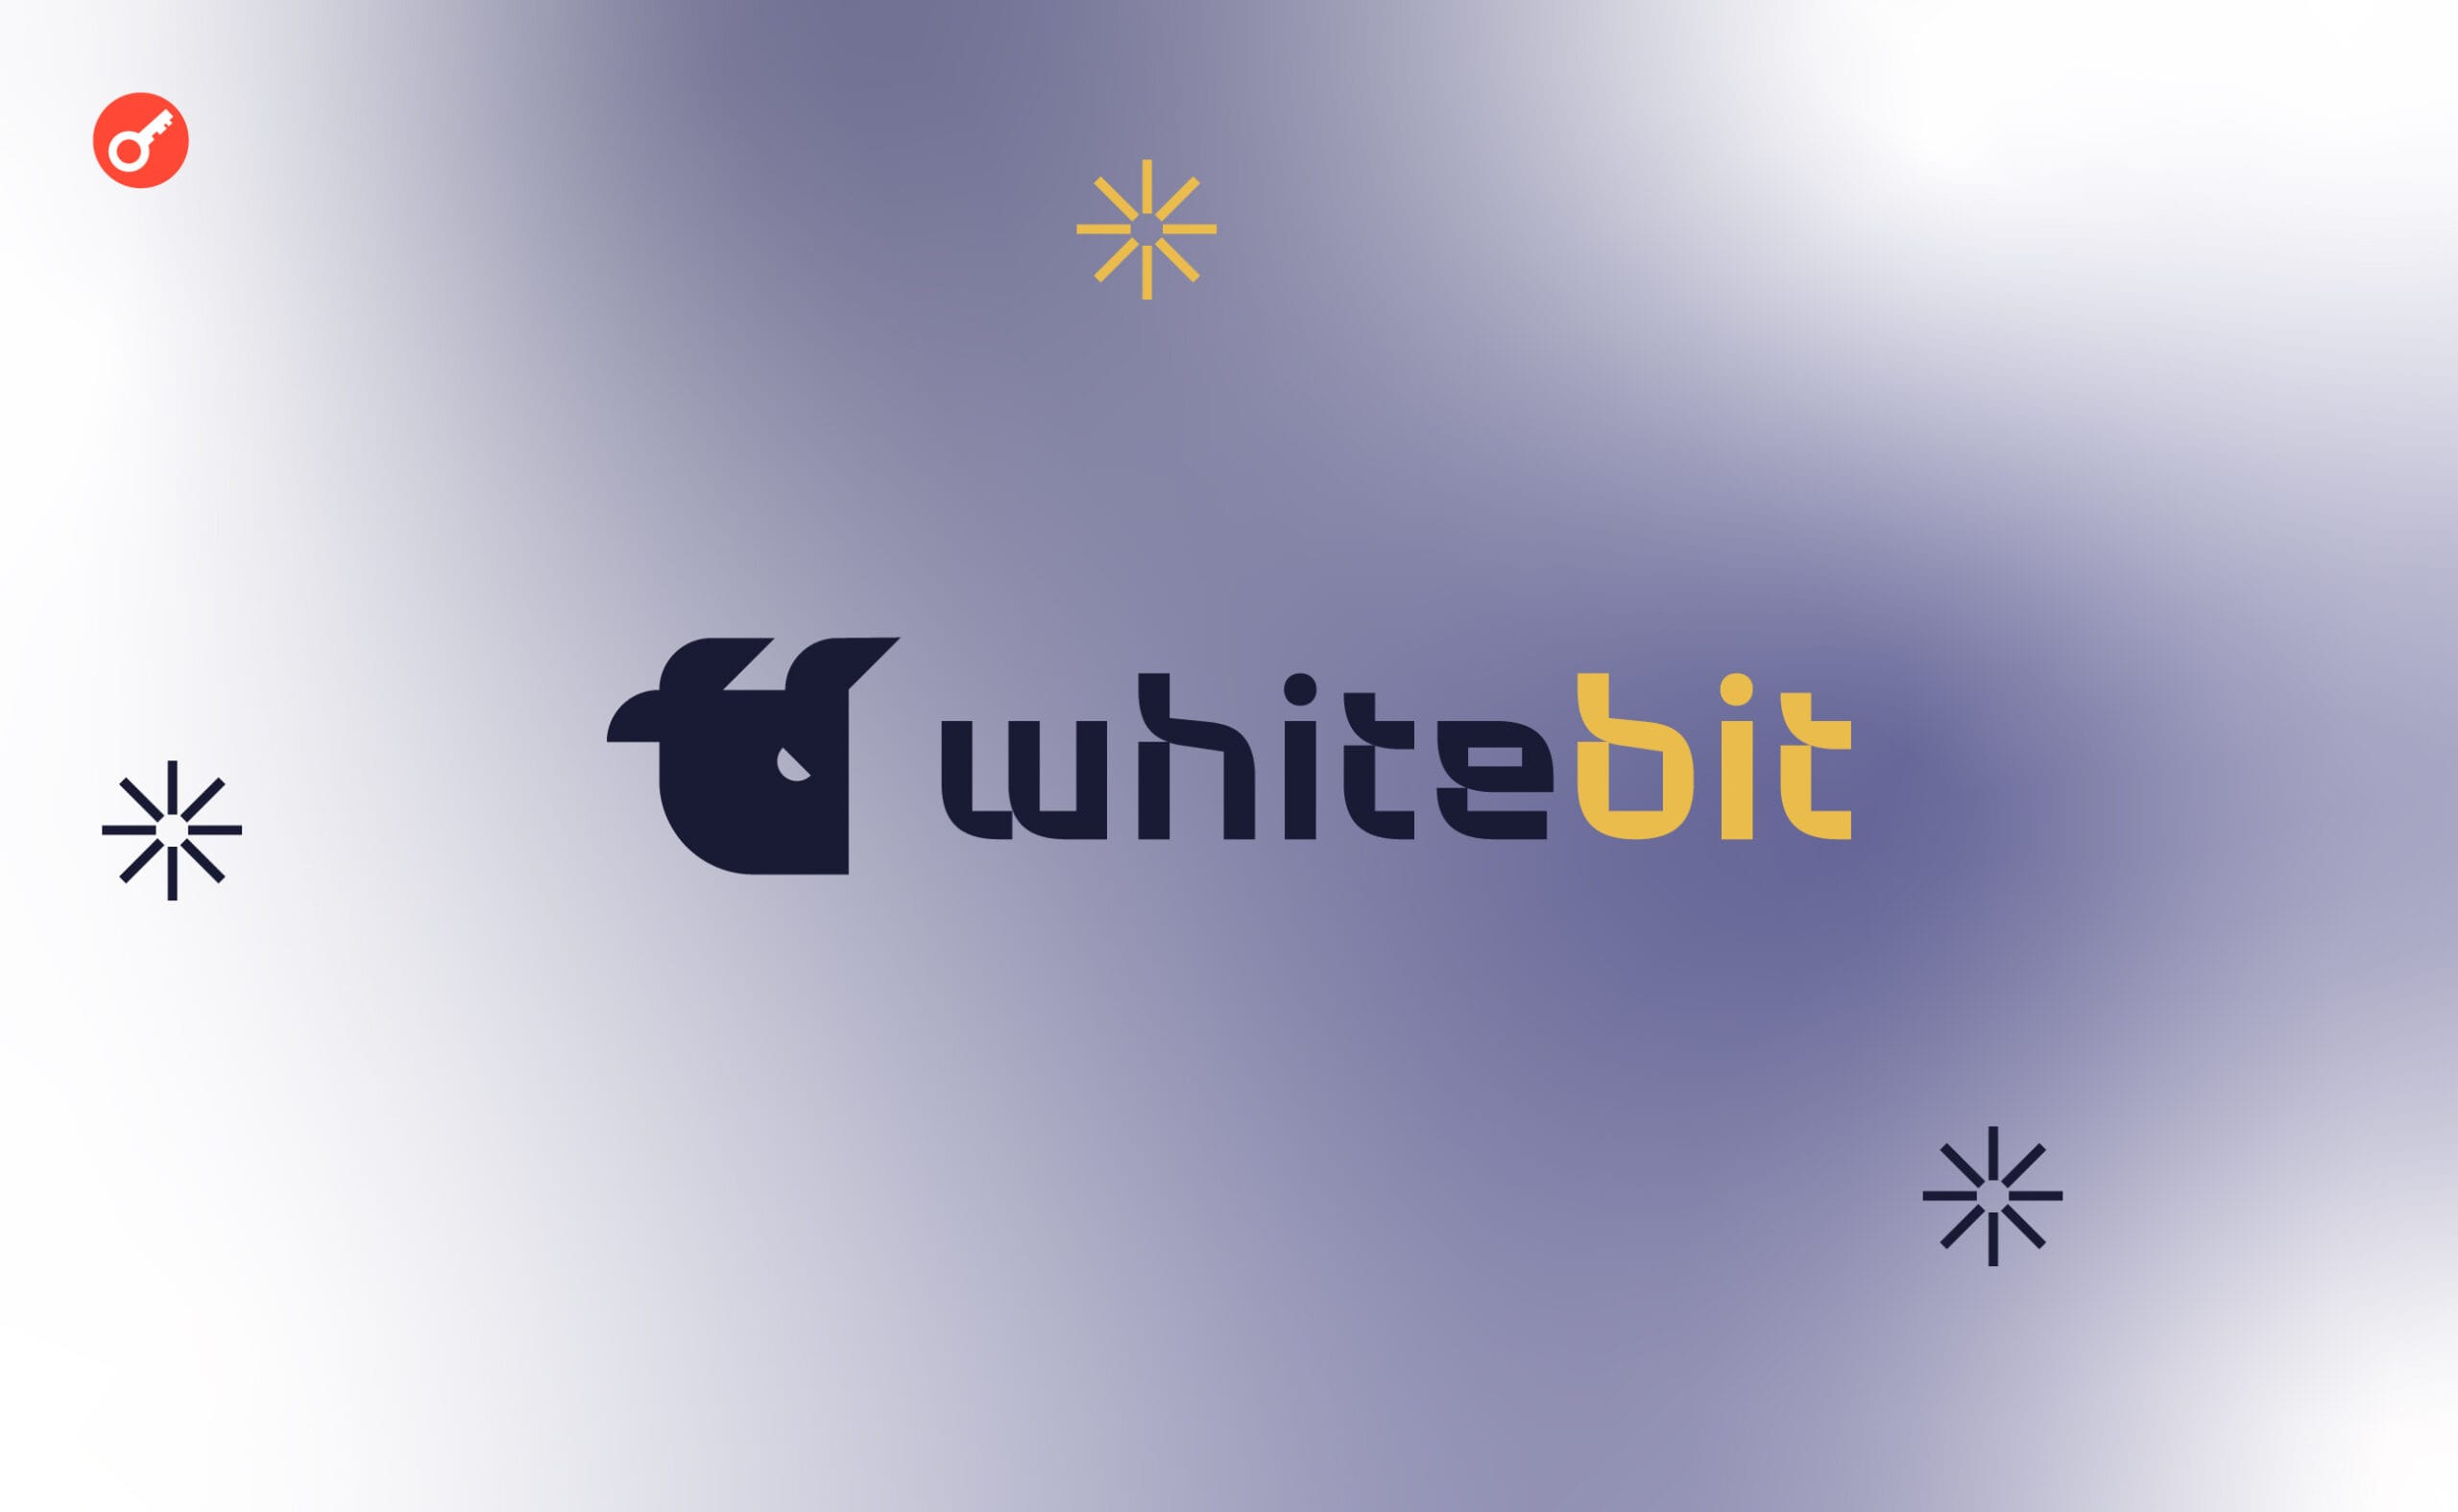 МЗС за підтримки WhiteBIT запустили чат-бот для допомоги громадянам у консульських питаннях. Головний колаж новини.